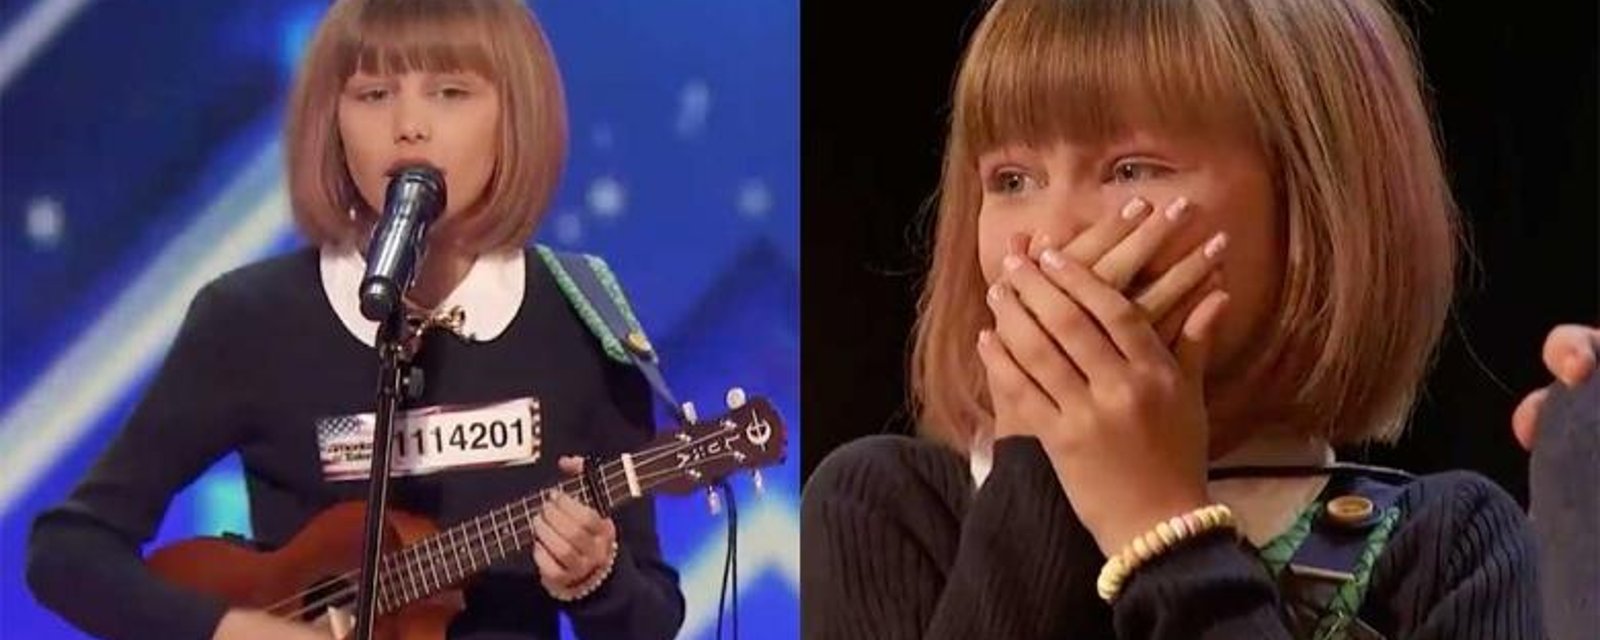 Cette jeune fille de 12 ans est la nouvelle star mondiale de la chanson, voici pourquoi!